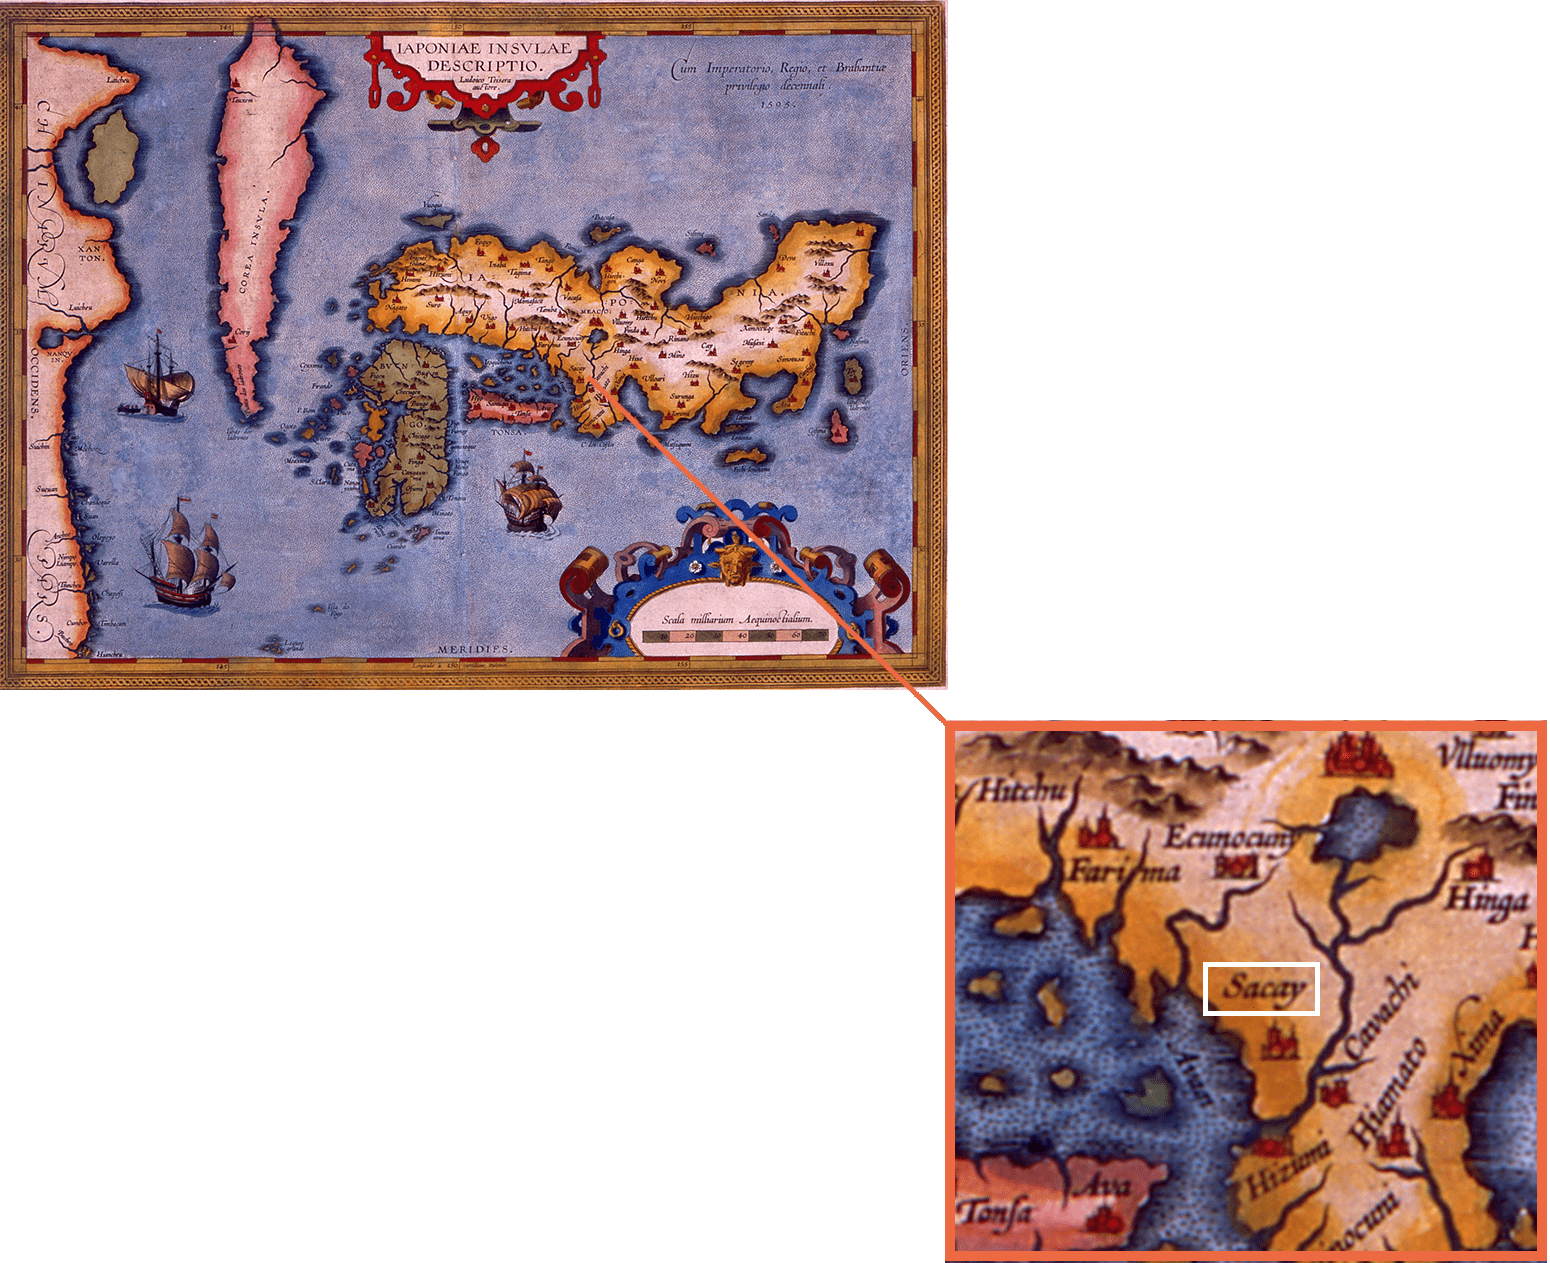 フェニーチェSACAYの［SACAY］とは 中世において宣教師により記された、ヨーロッパでの印刷による単独の日本図としては最初の図となる、テイセラ／オルテリウス 「日本図」（1595年）に記載された「堺」の表現です。国名以外で表記があるのは、堺と都、鹿児島の三都市のみであり、自由・自治都市、また国際貿易港として大いに繁栄した堺を彷彿とさせる表現です。ホール愛称「フェニーチェ堺」の由来 堺は幾度の戦火から不死鳥のように蘇ってきた。また、中世、イタリアのベニスと称された堺のまちを想起されることから、不死鳥（フェニックス）をイタリア語で表現。